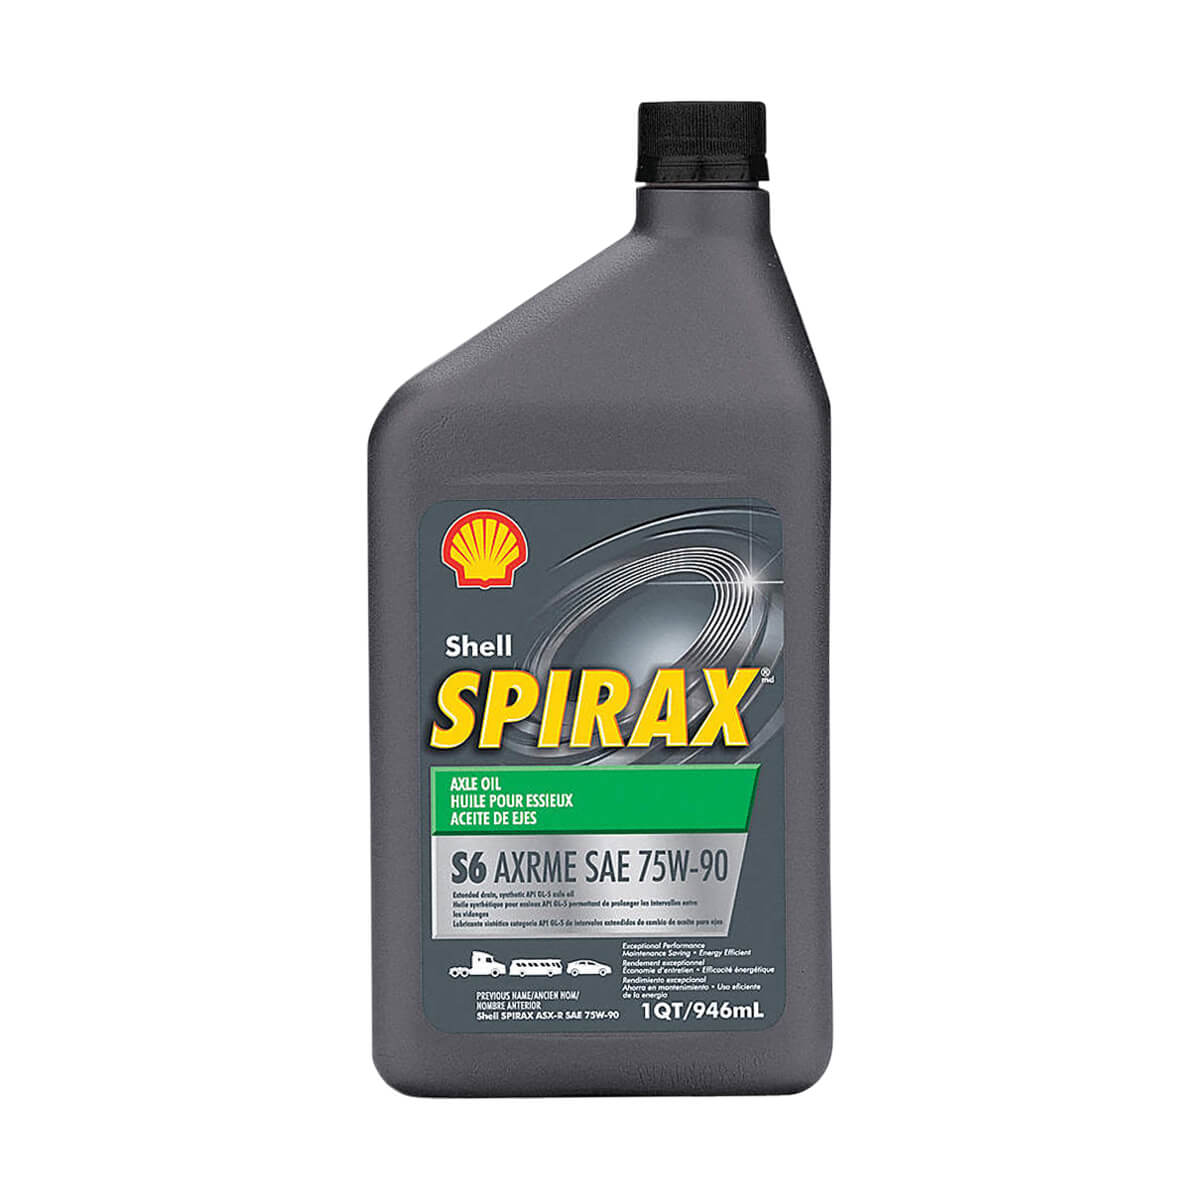 Shell Spirax S6 AXRME 75W-90 - 1 L